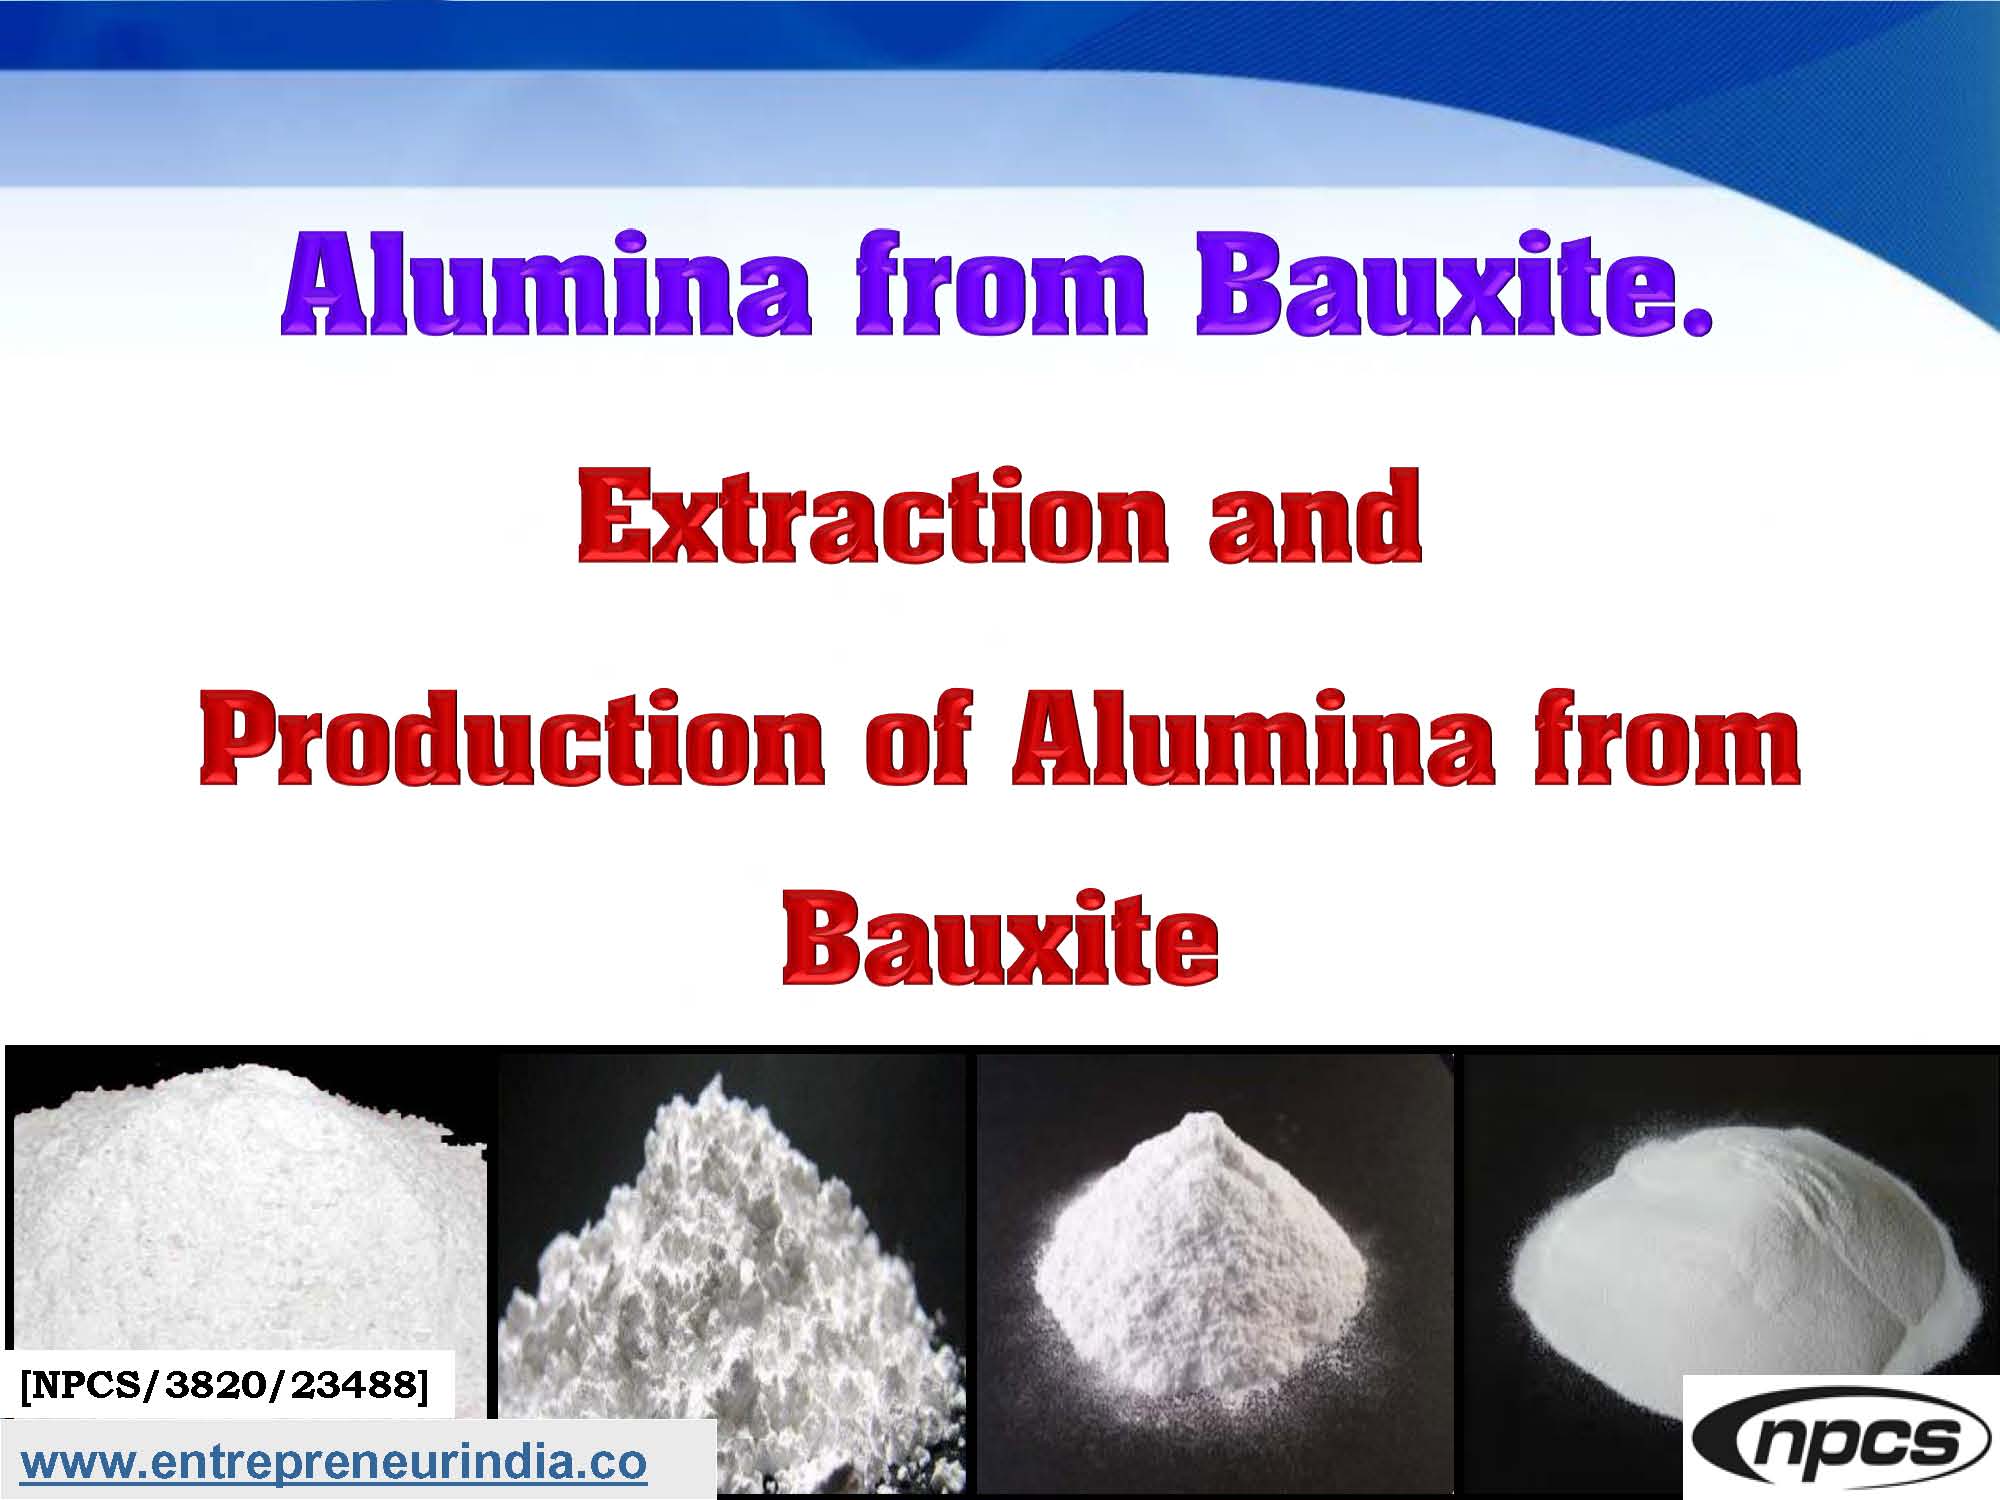 Alumina from Bauxite